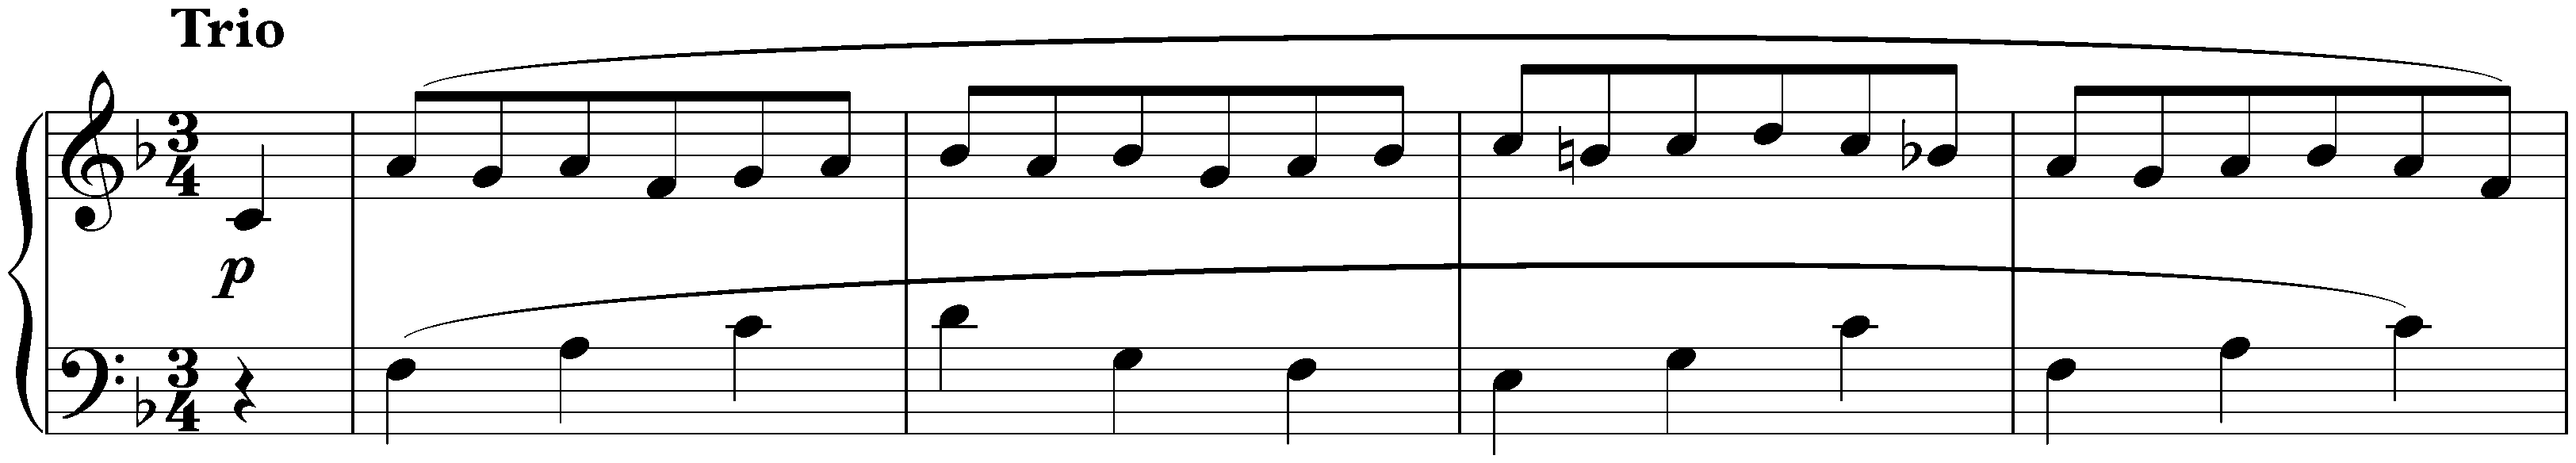 Sonata no. 1 in F minor, op. 2 no. 1; 3. Menuetto: Allegretto